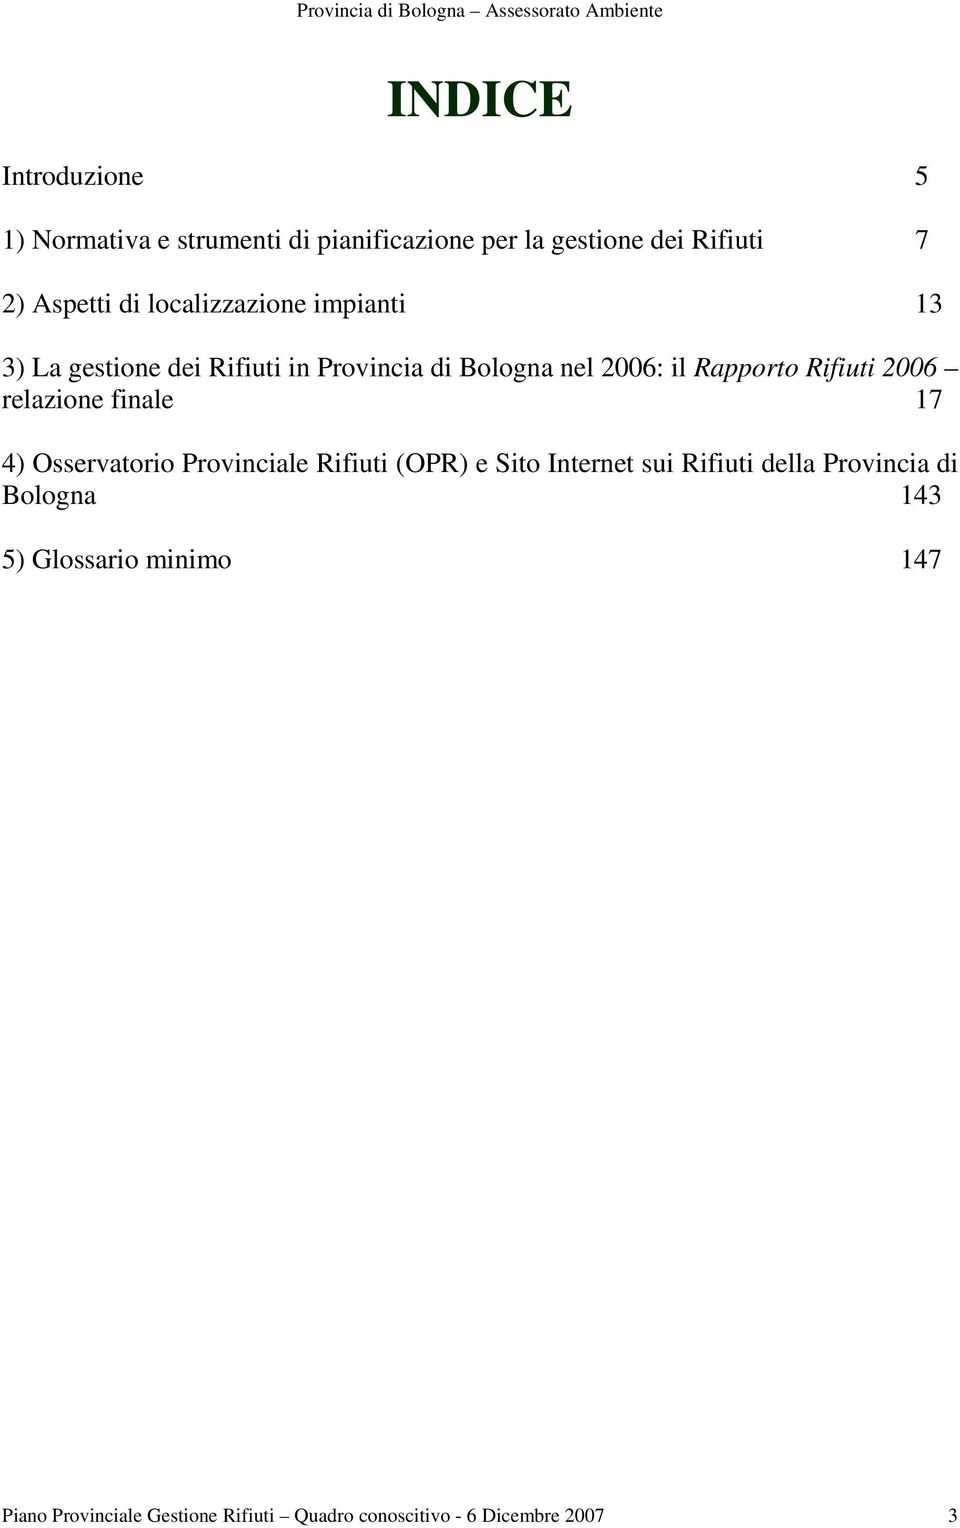 2006 relazione finale 17 4) Osservatorio Provinciale Rifiuti (OPR) e Sito Internet sui Rifiuti della